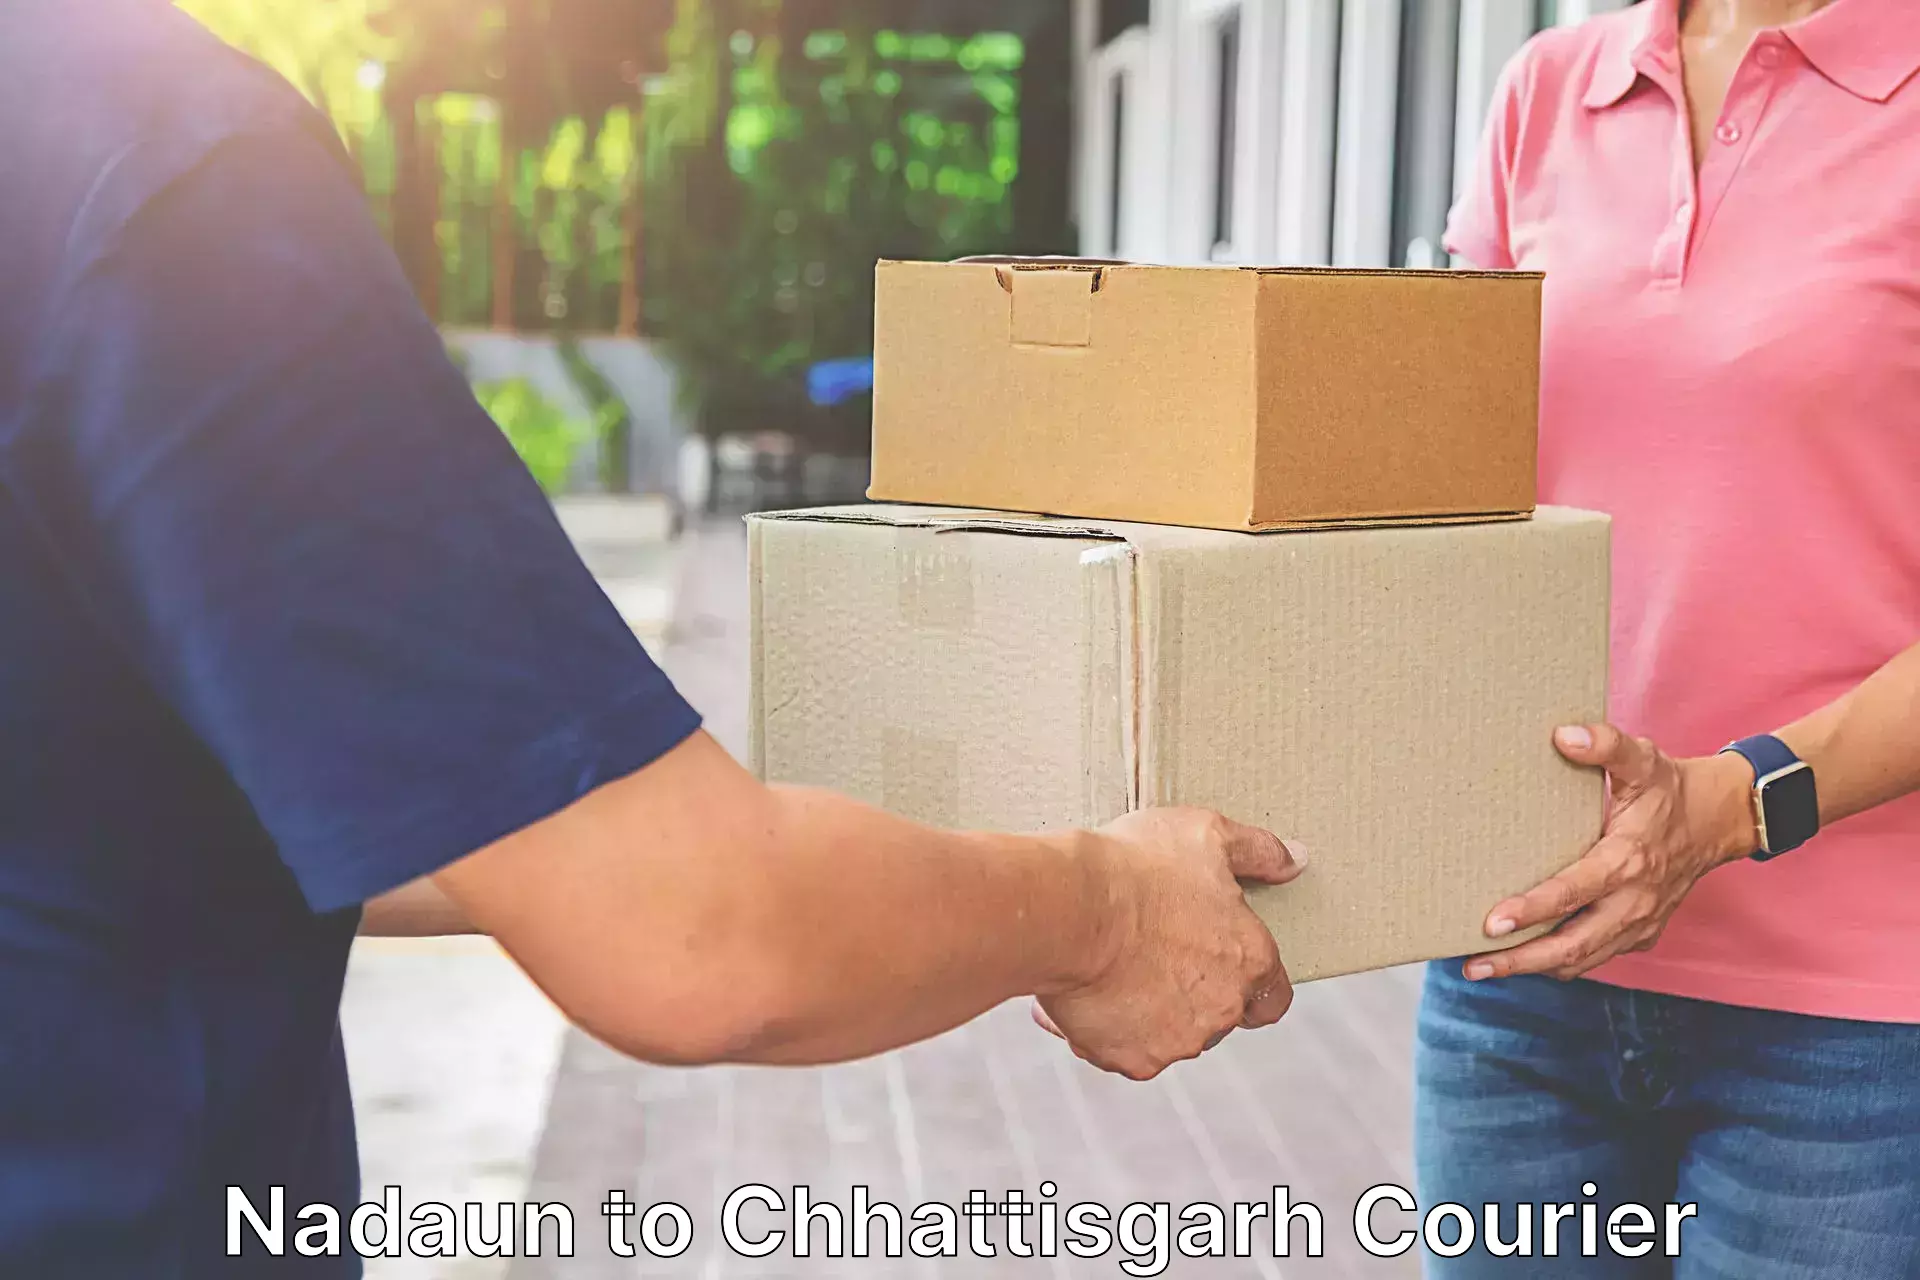 Reliable courier service Nadaun to Korea Chhattisgarh